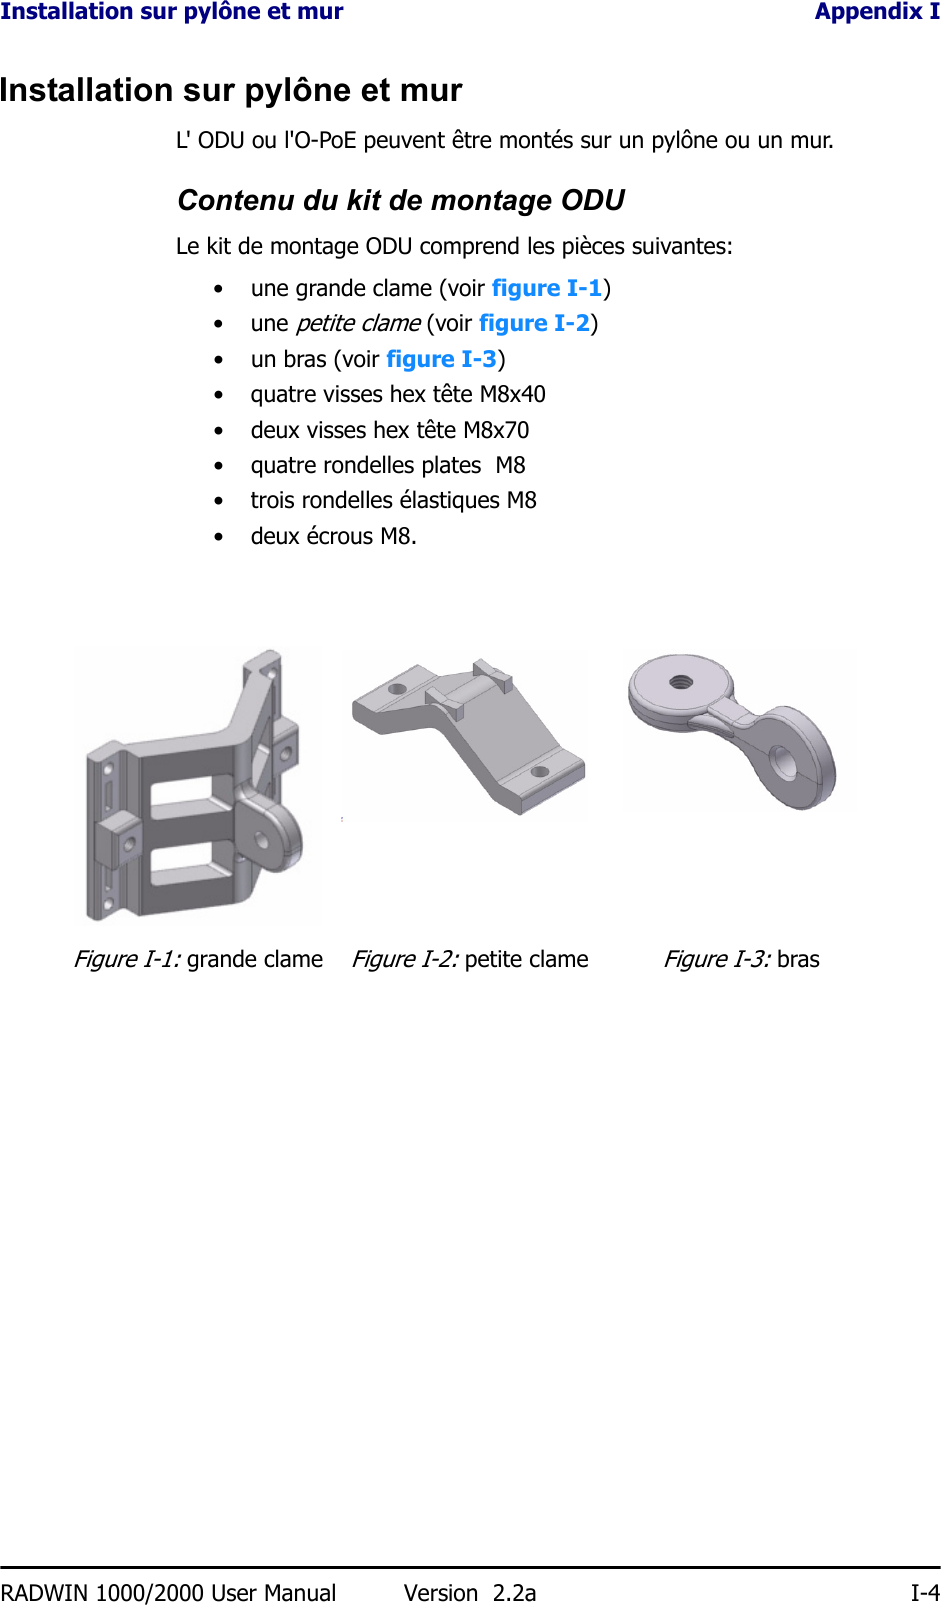 Installation sur pylône et mur Appendix IRADWIN 1000/2000 User Manual Version  2.2a I-4Installation sur pylône et murL&apos; ODU ou l&apos;O-PoE peuvent être montés sur un pylône ou un mur.Contenu du kit de montage ODULe kit de montage ODU comprend les pièces suivantes:• une grande clame (voir figure I-1)• une petite clame (voir figure I-2)• un bras (voir figure I-3)• quatre visses hex tête M8x40• deux visses hex tête M8x70• quatre rondelles plates  M8• trois rondelles élastiques M8• deux écrous M8.Figure I-1: grande clameFigure I-2: petite clameFigure I-3: bras